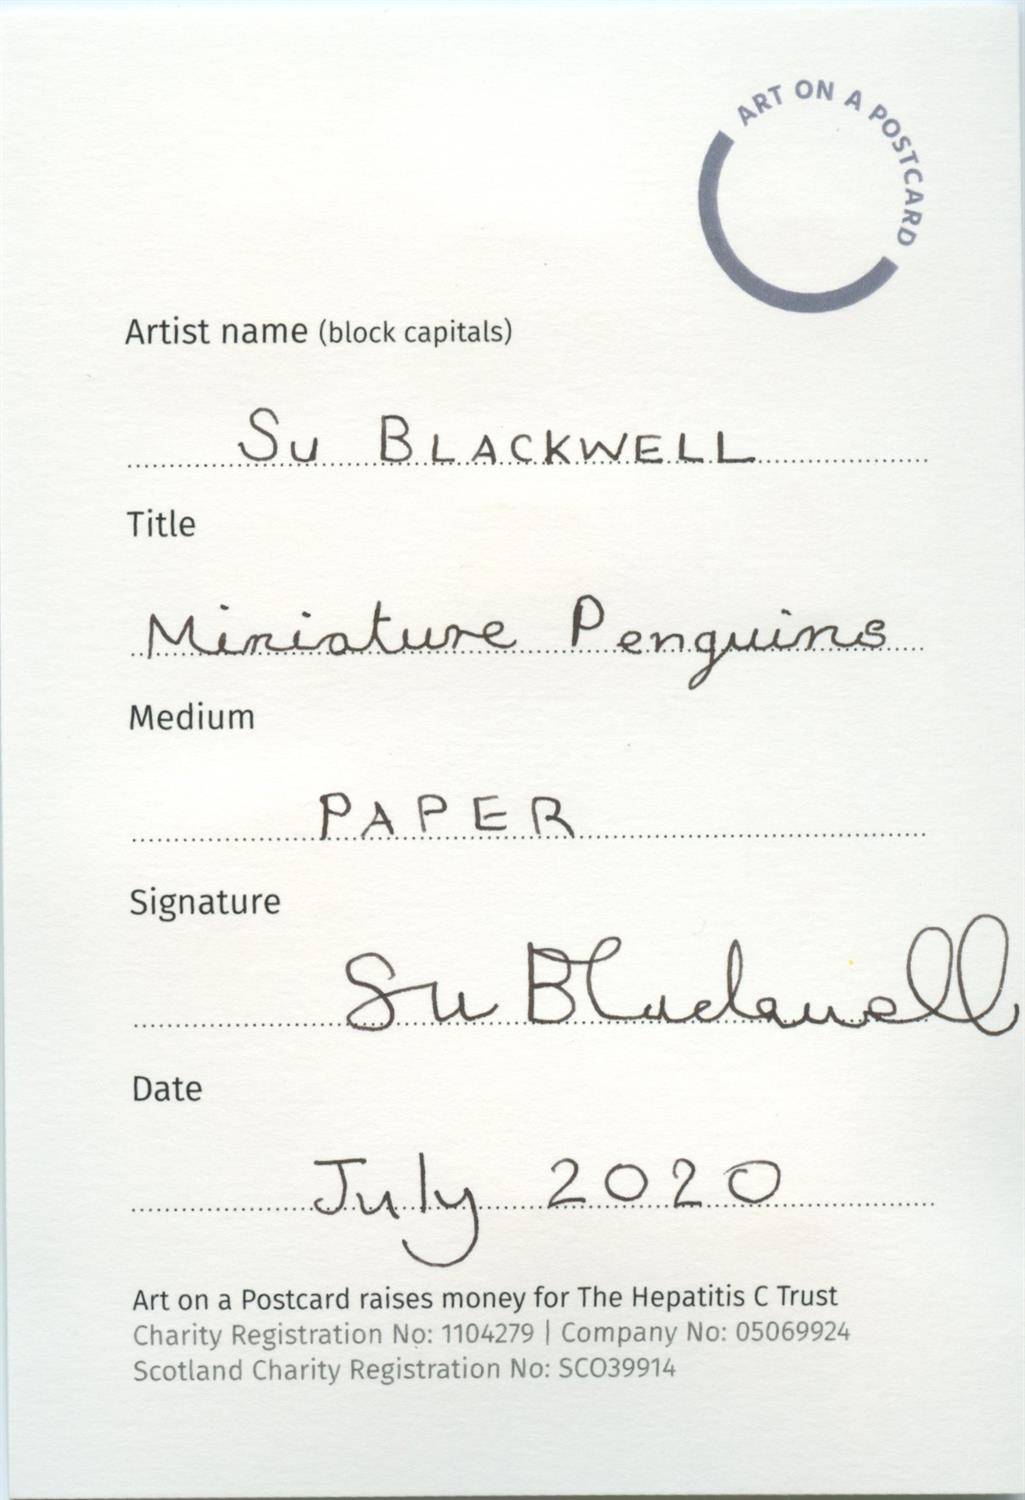 Su Blackewell, Miniature Penguins, 2020 - Image 2 of 3